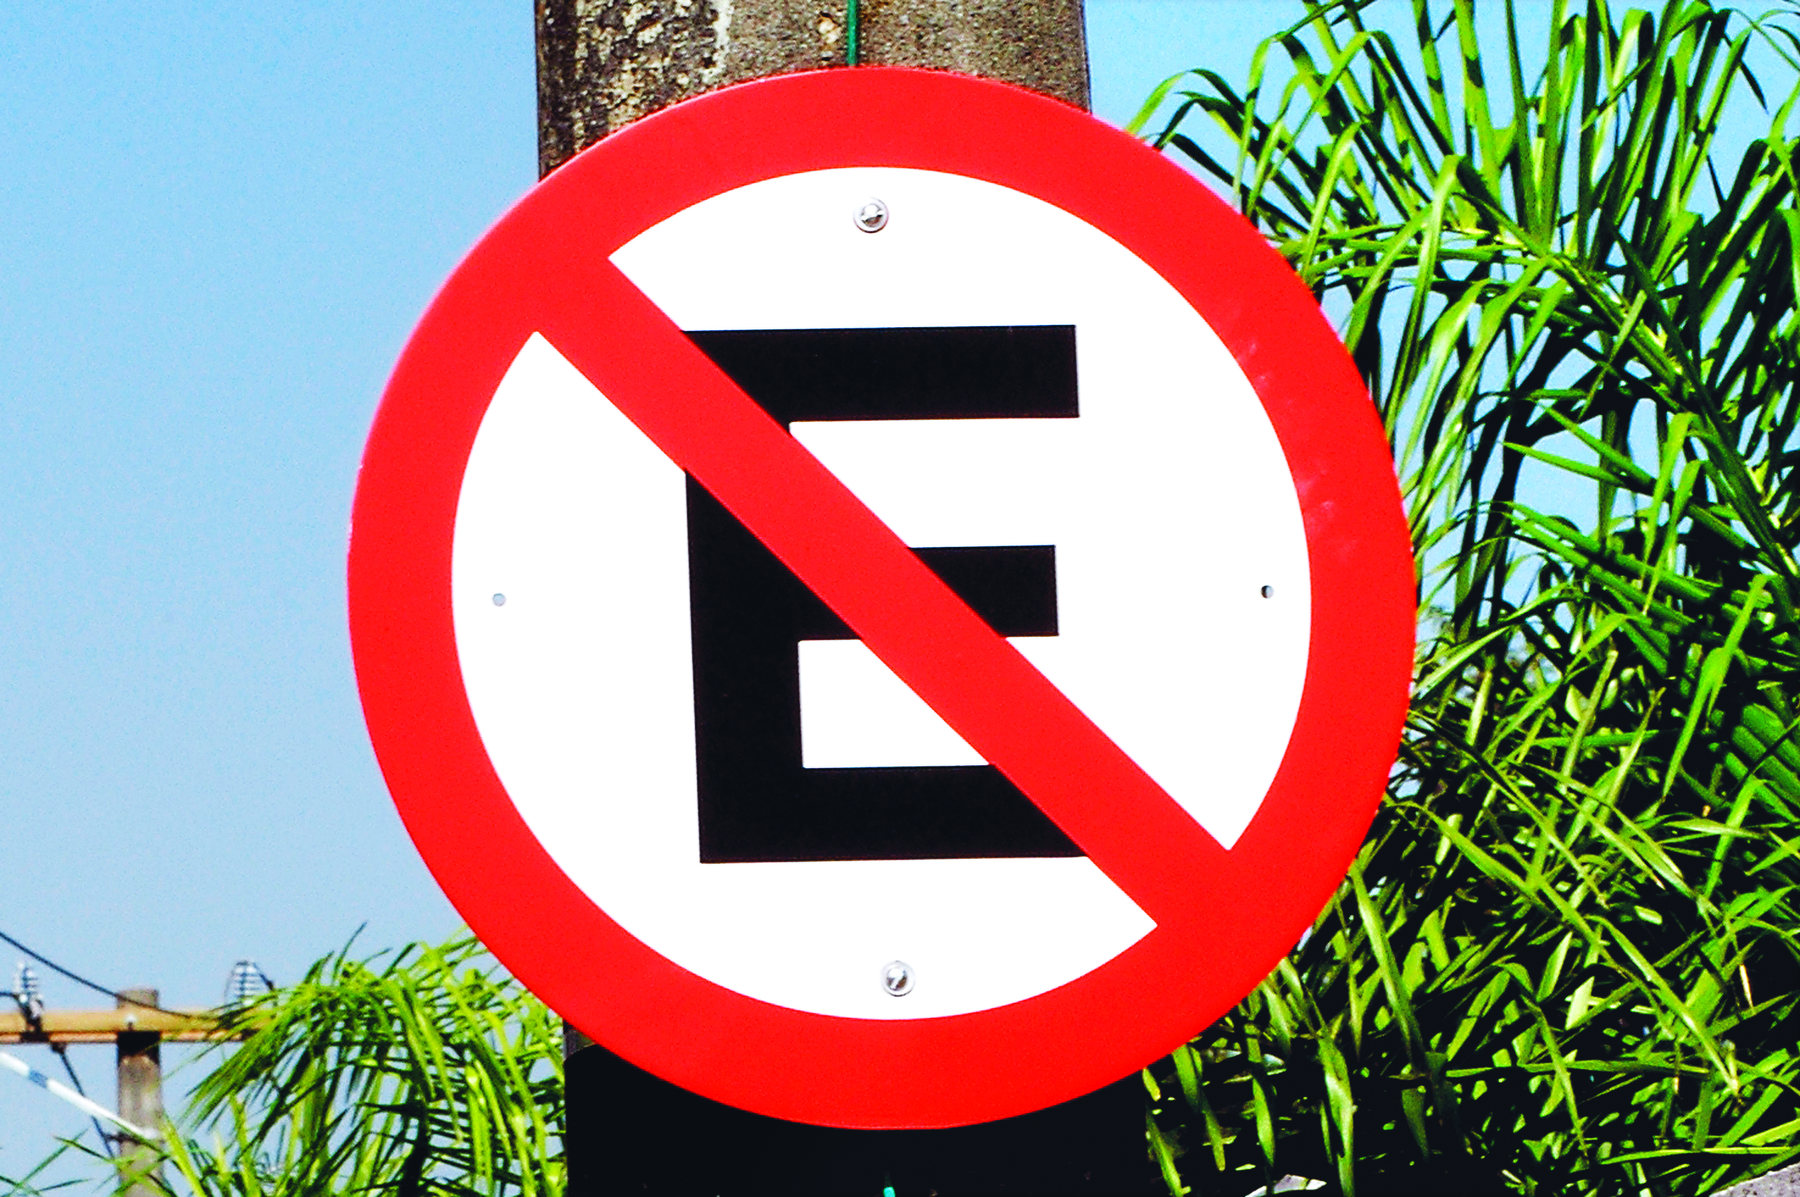 Fotografia. Placa de sinalização de trânsito proibindo estacionar. Placa circular com fundo branco e borda vermelha com a letra E no centro, uma linha diagonal vermelha está sobre a letra E.